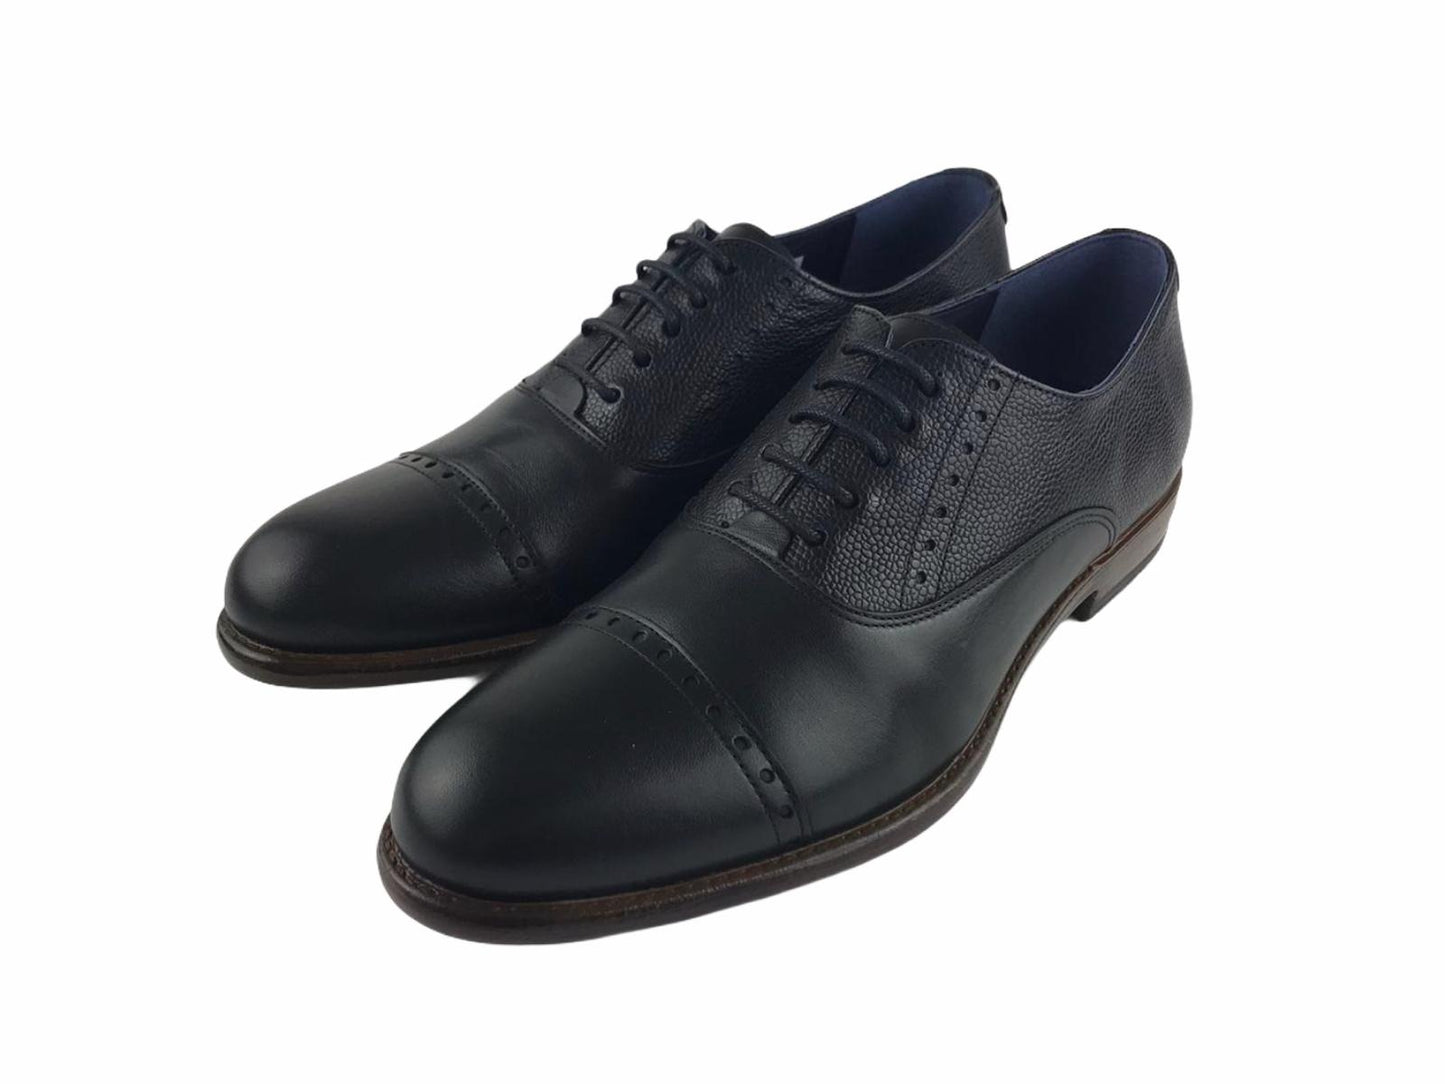 Tolino | Men's shoe dress Toledano black